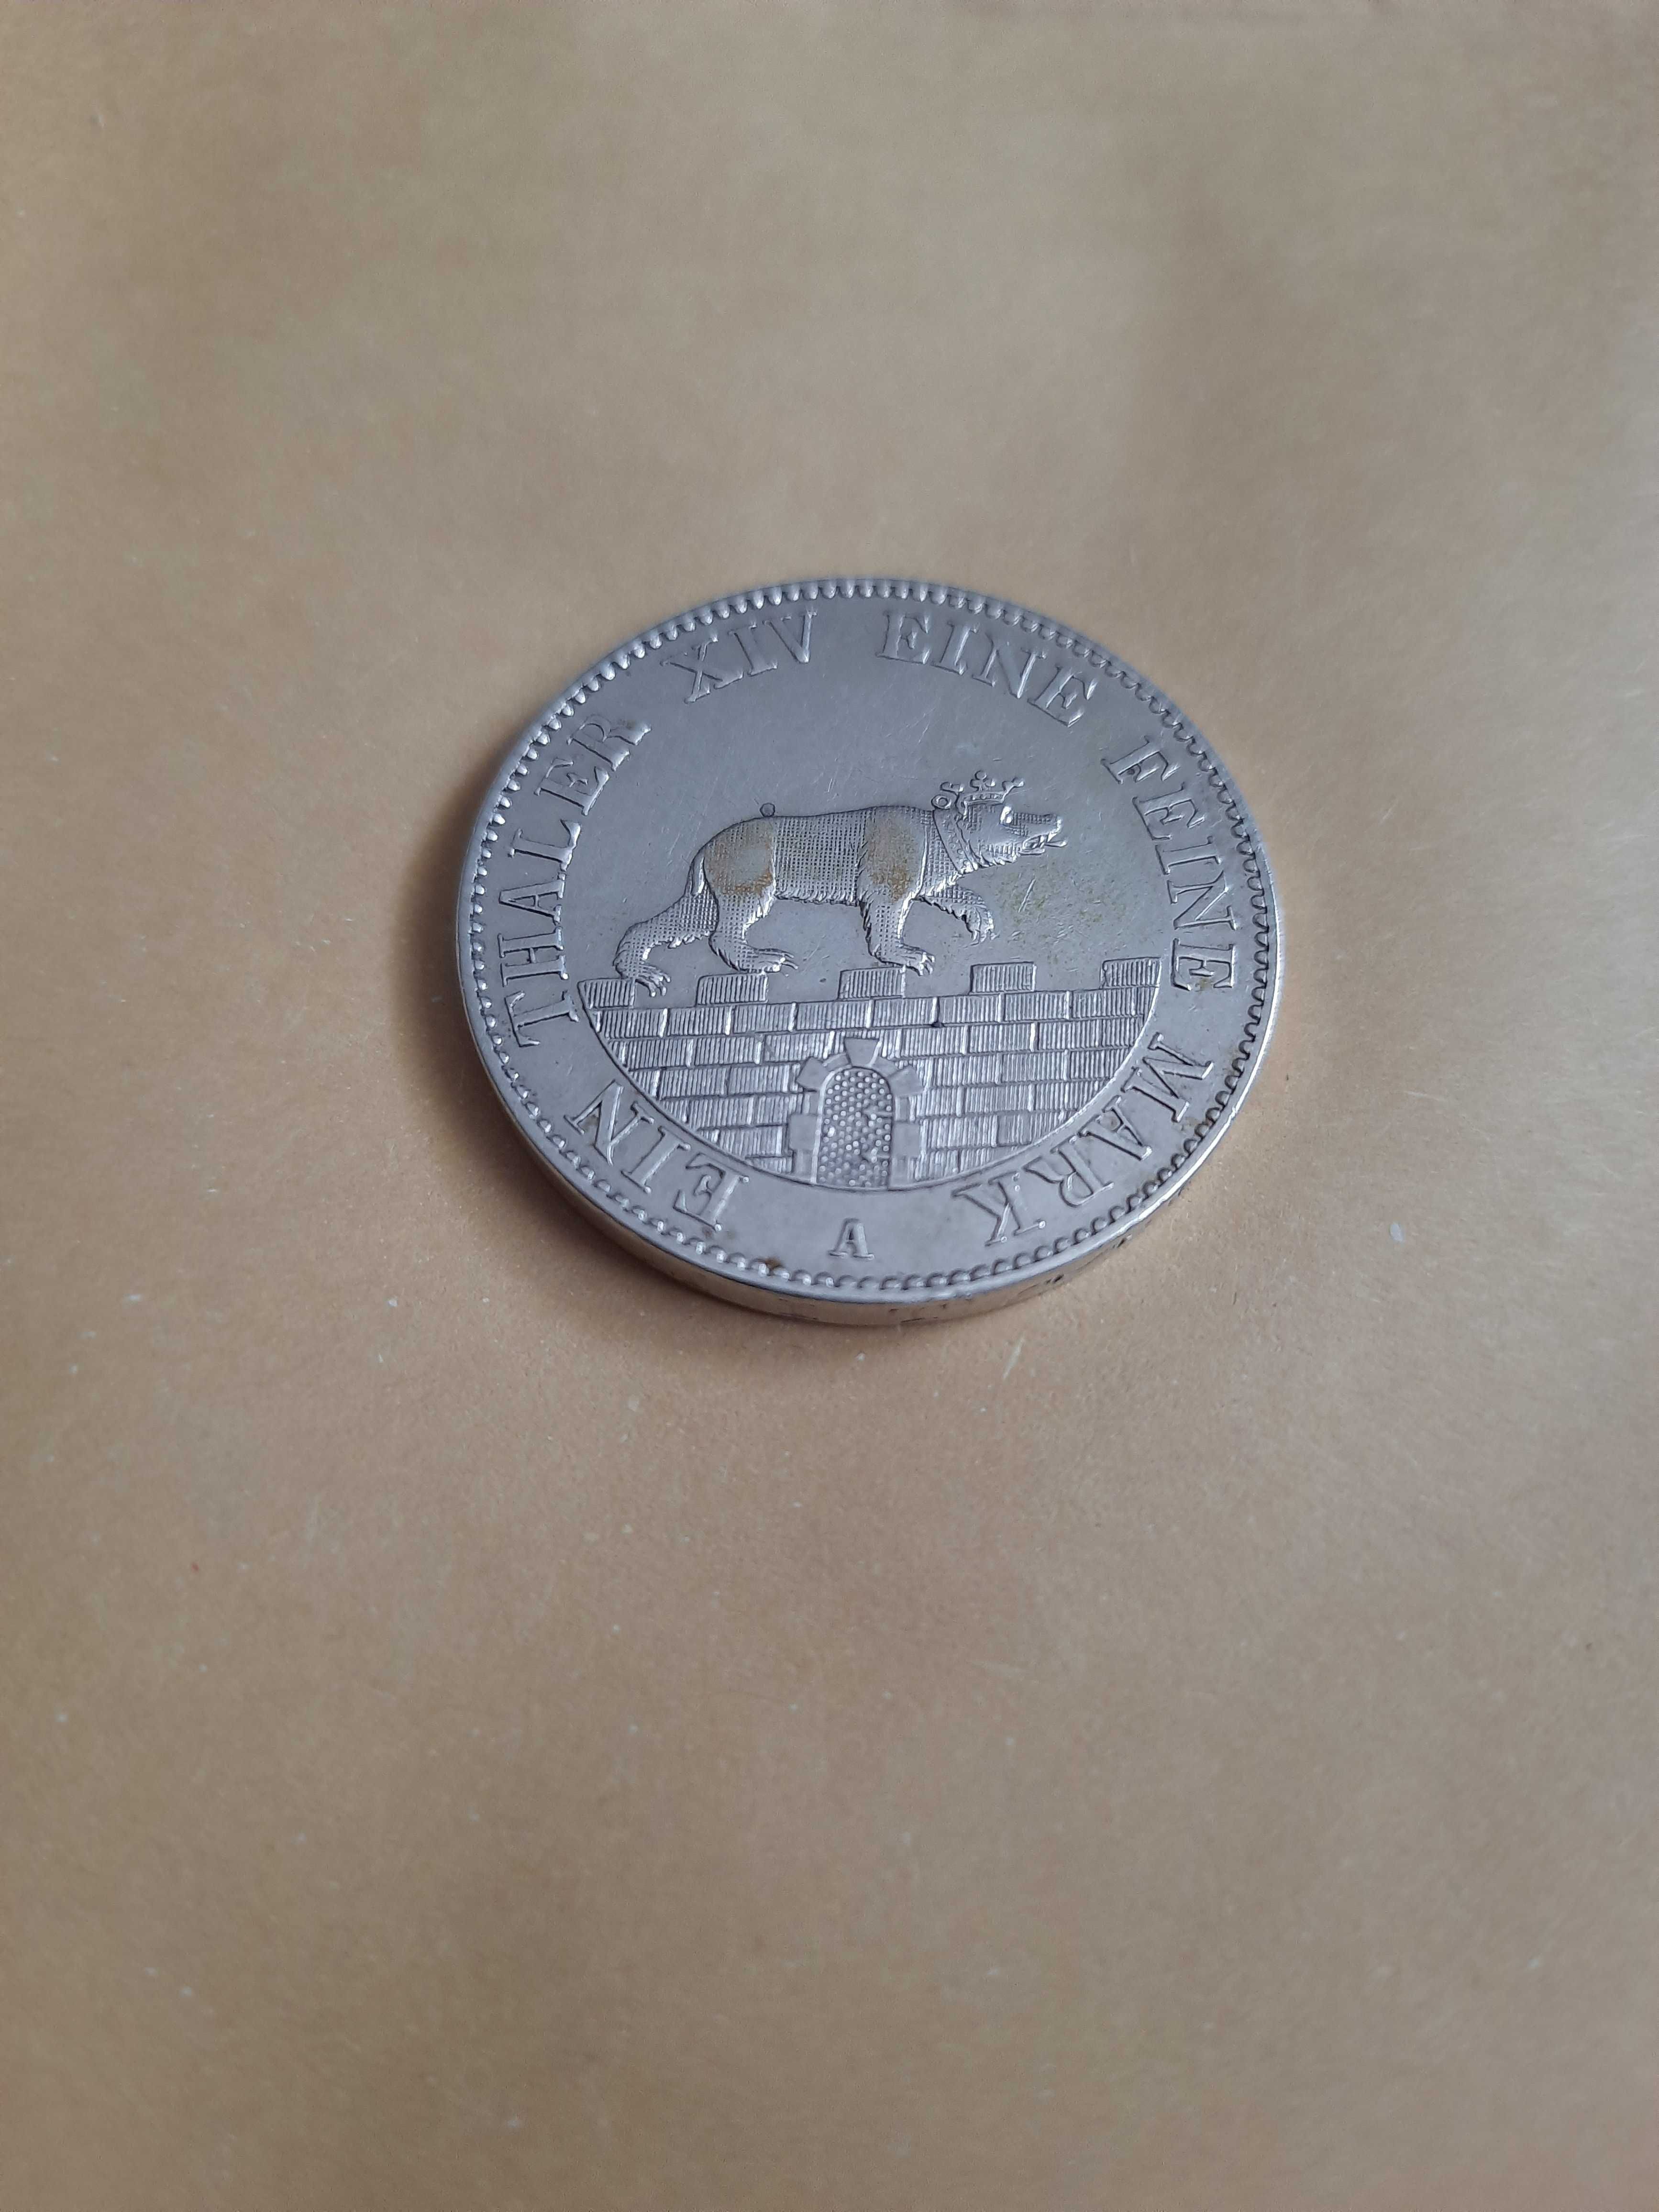 СРІБЛО монета 1 ТАЛЕР 1846 року Герцогство Анхальт - Бернбург